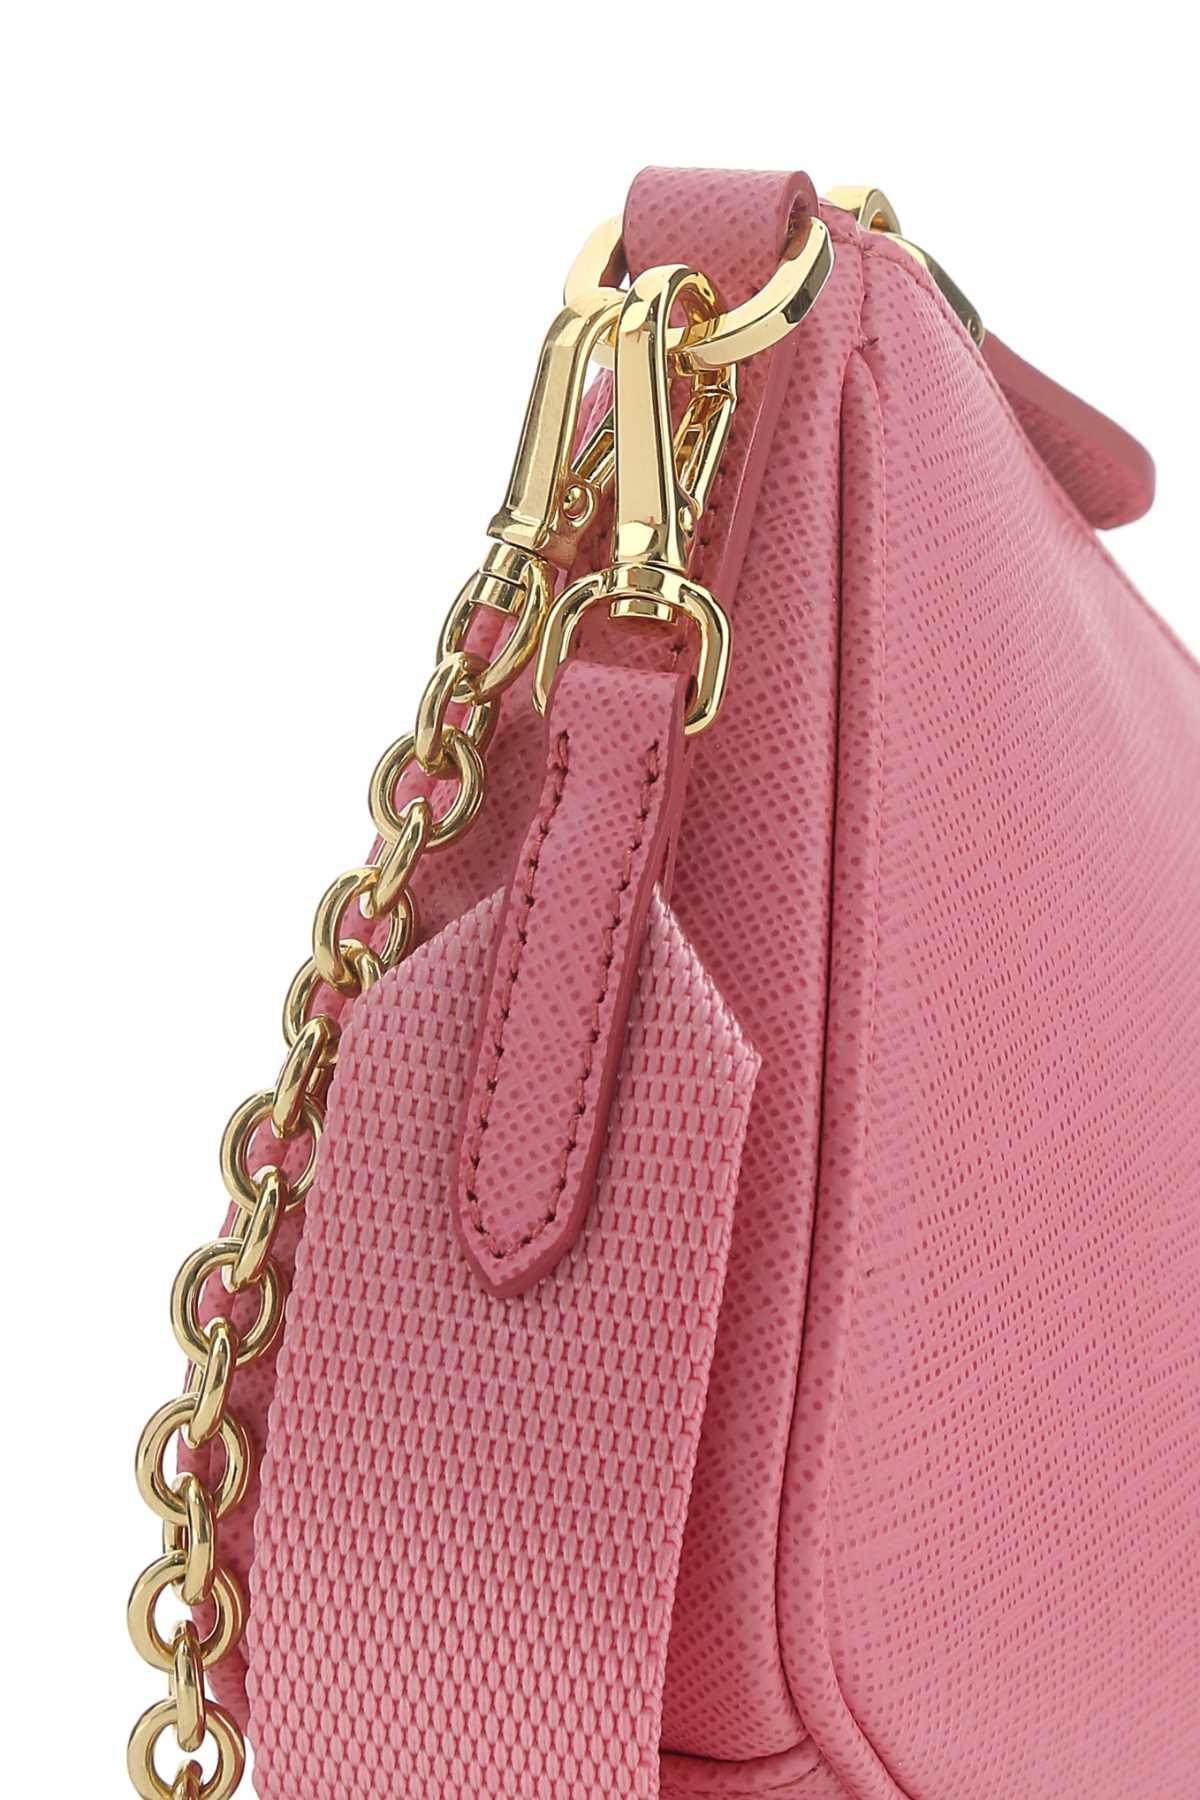 Prada Re-edition 2000 Pink Shoulder Bag at 1stDibs